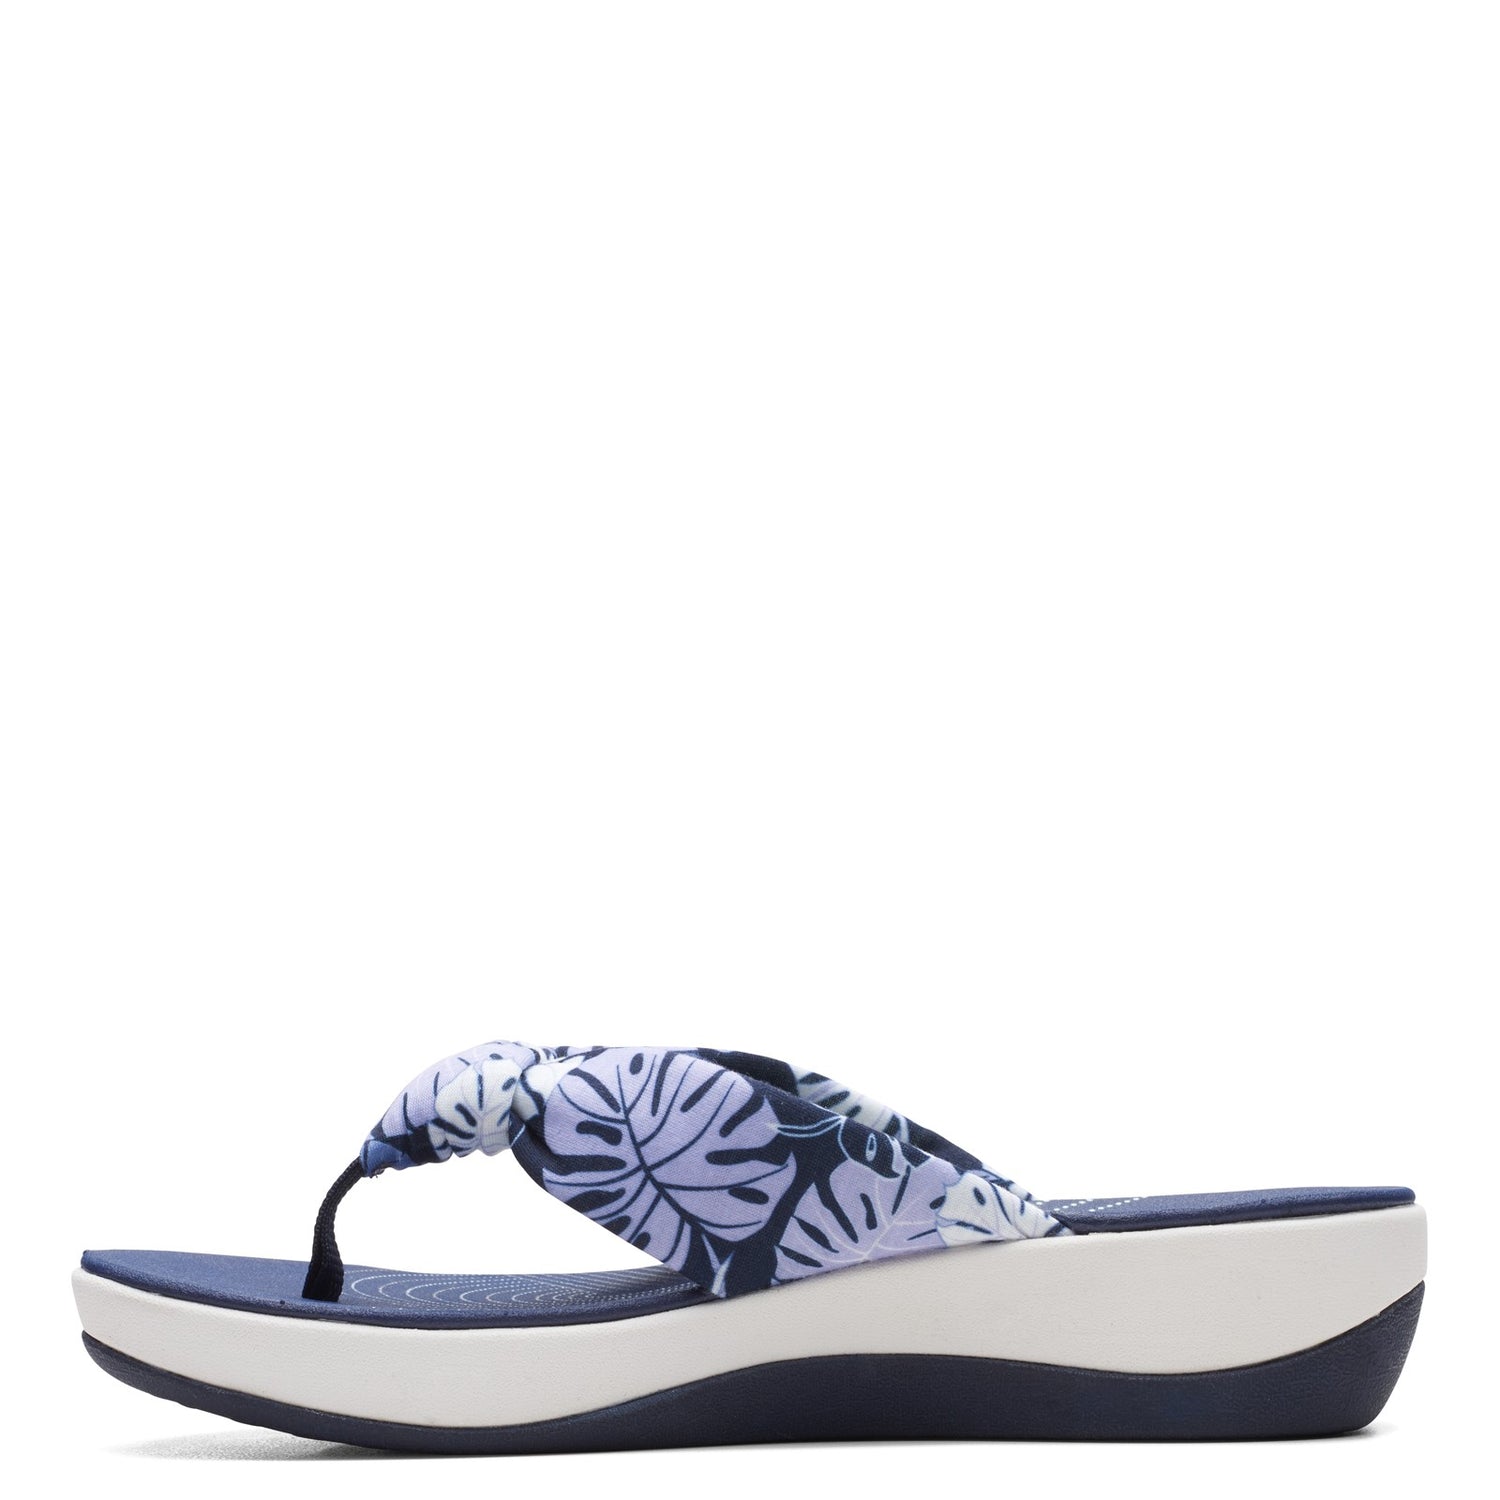 Peltz Shoes  Women's Clarks Arla Glison Sandal BLUE FLORAL 26165049